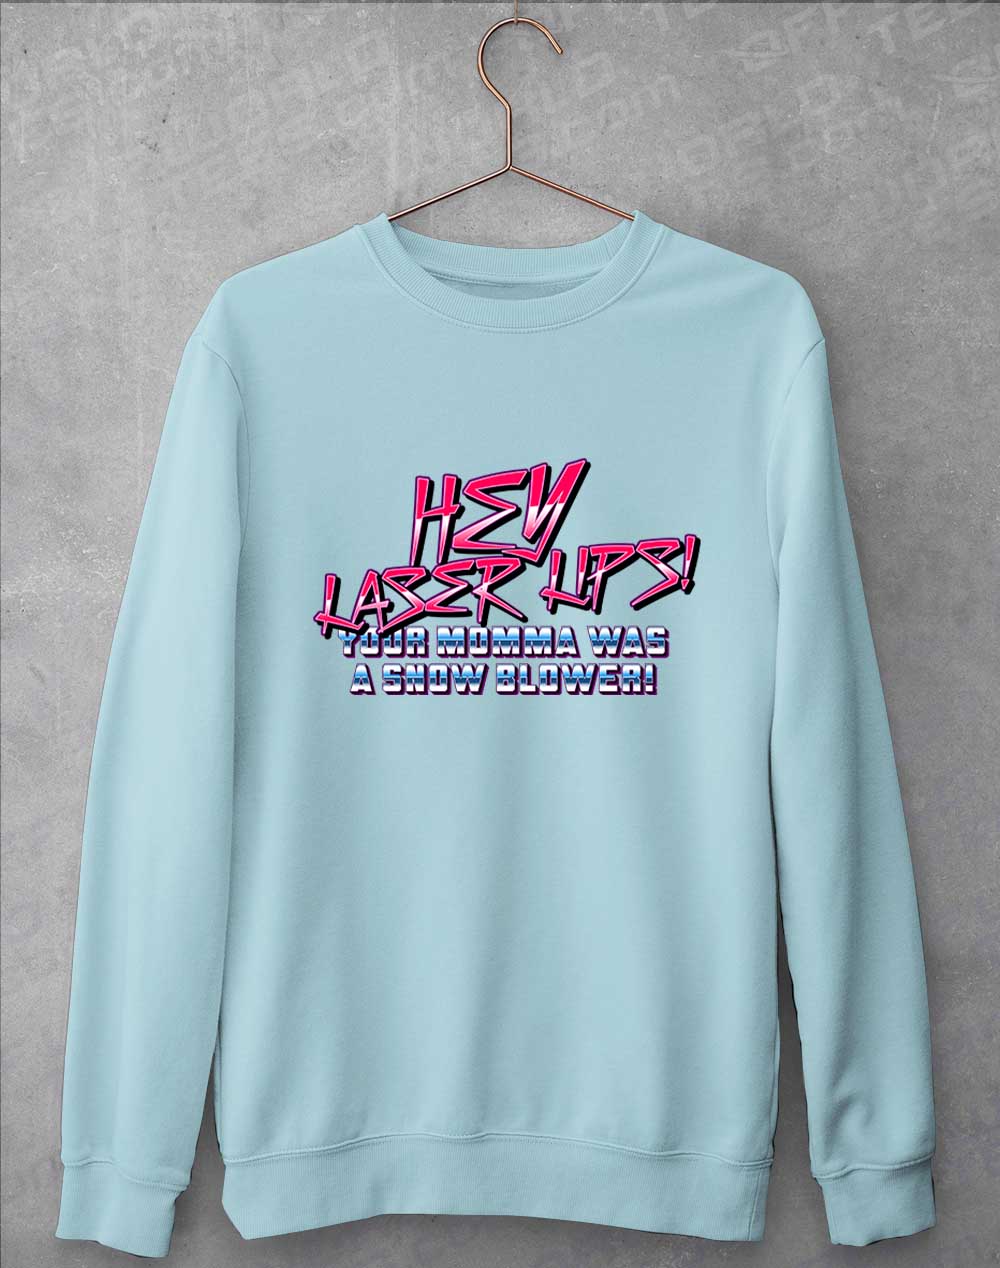 Sky Blue - Hey Laser Lips Sweatshirt